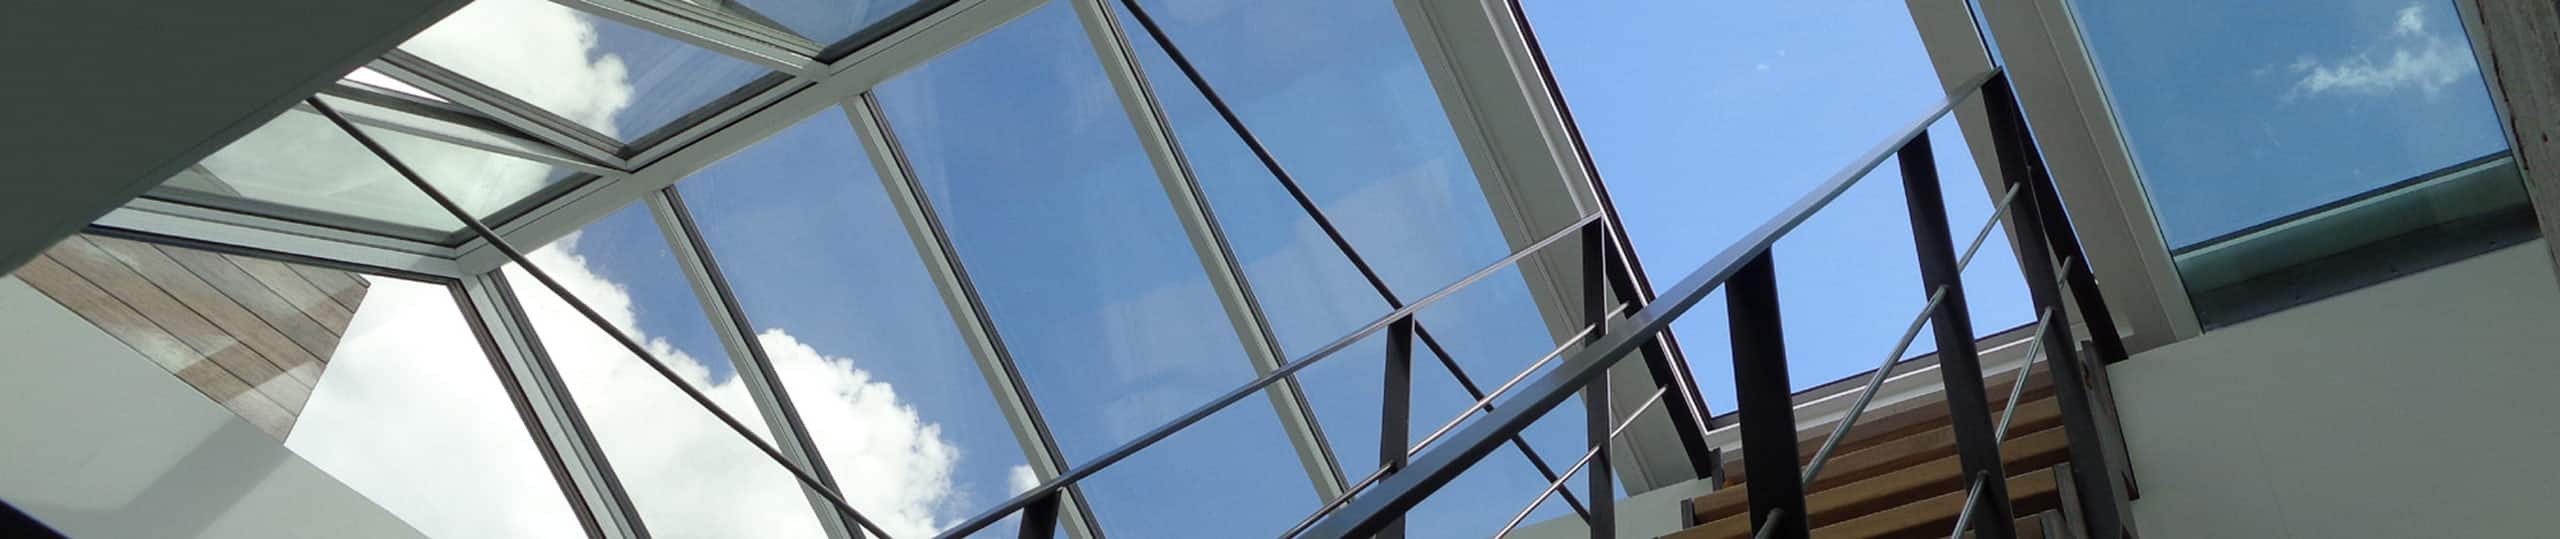 Innenansicht eines Dachausstiegsfensters in einem Satteldach